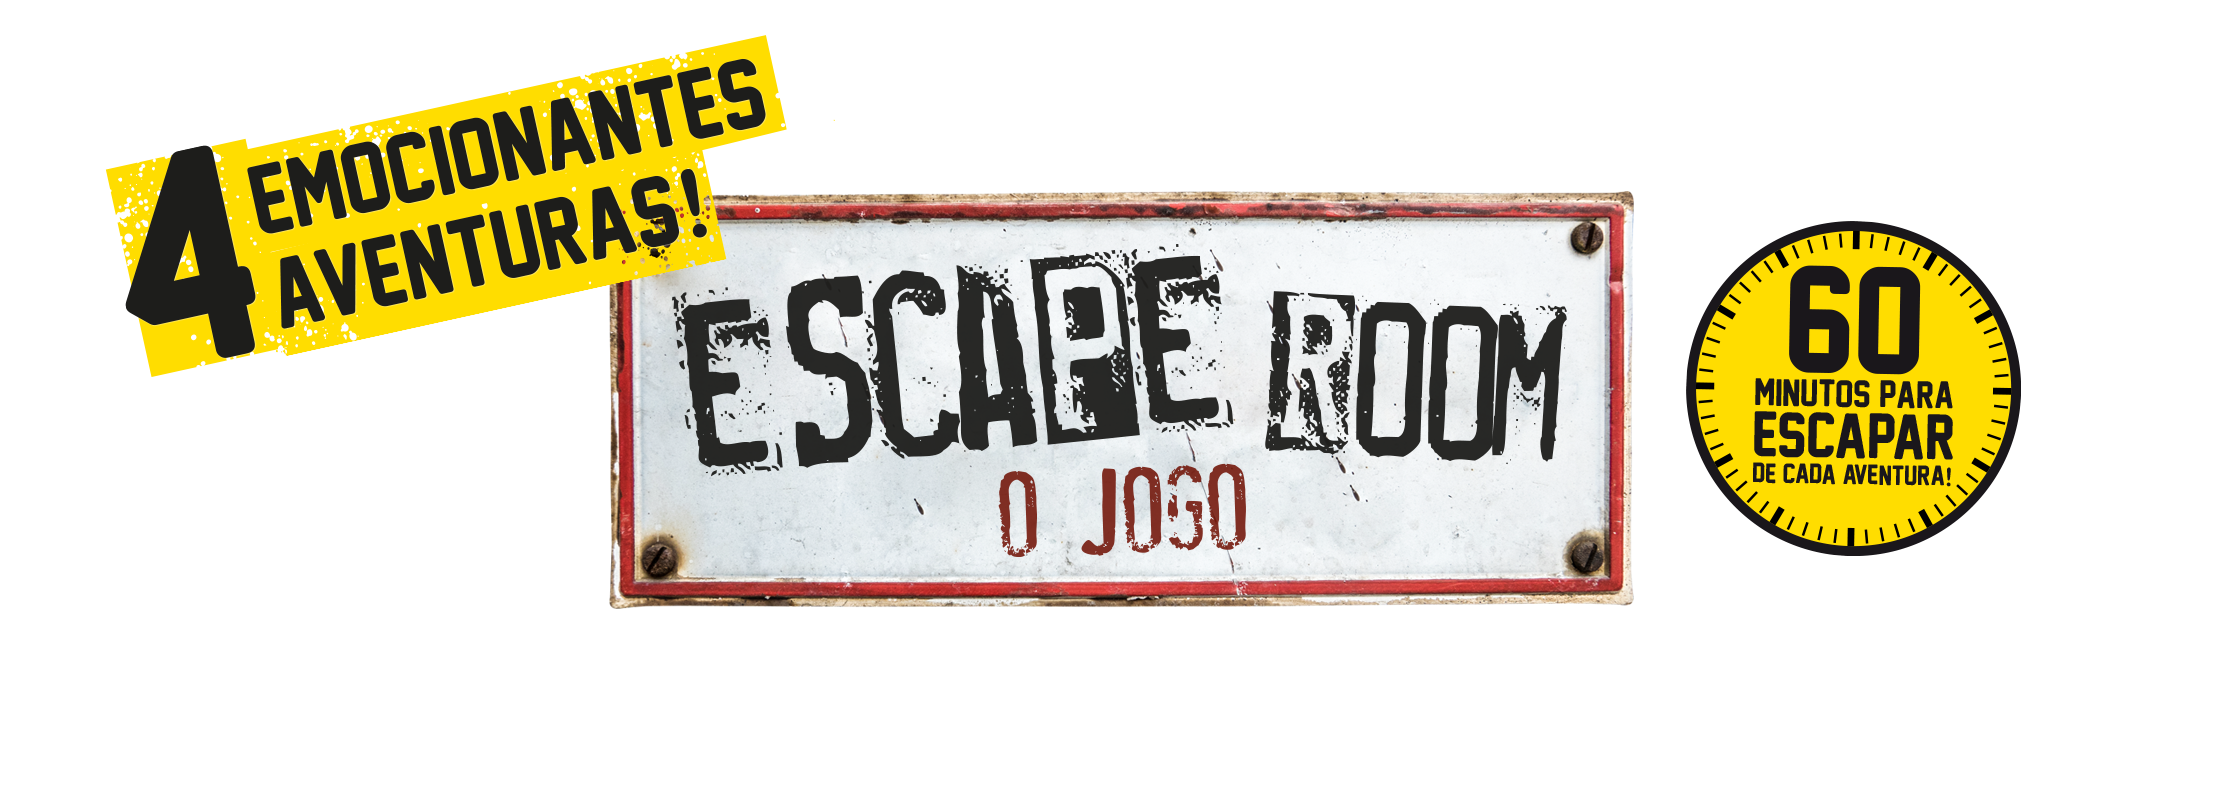 Comprar Escape Room – Jogo de Fuga da Concentra